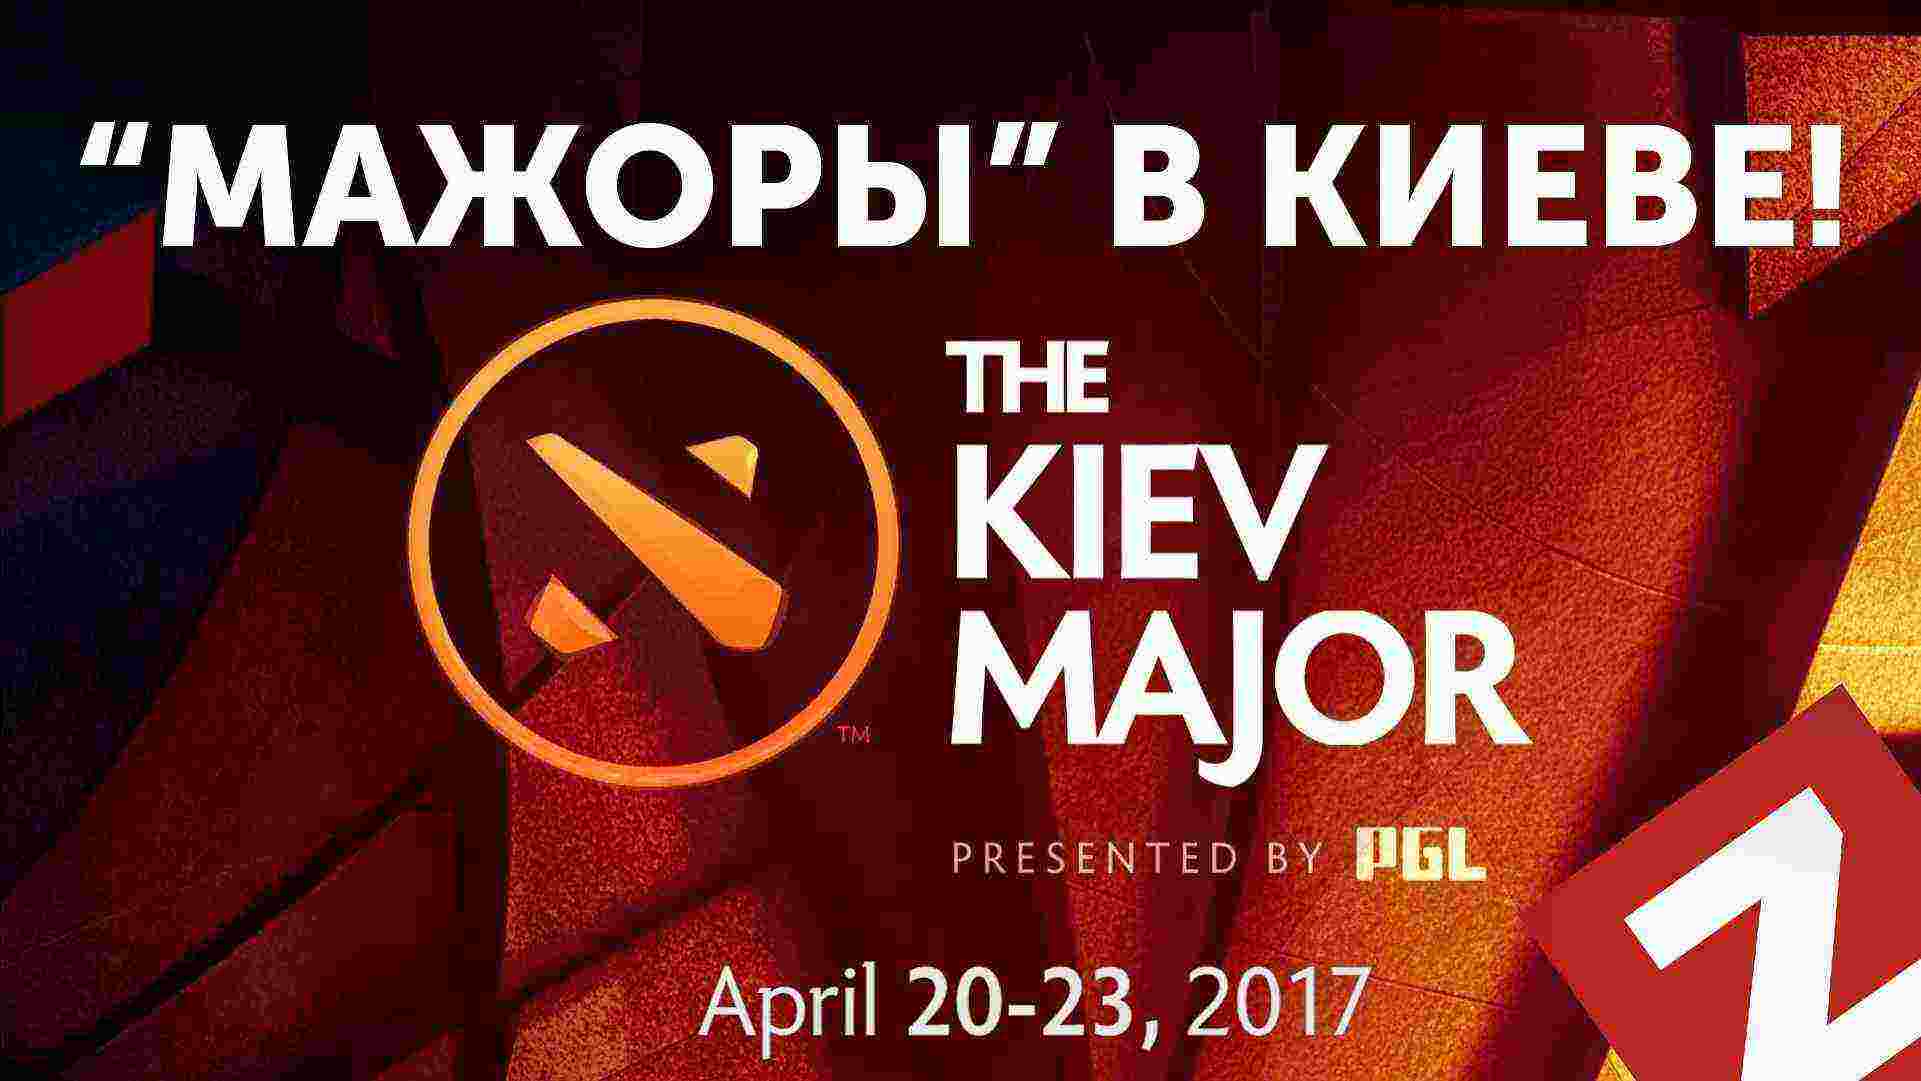 Следующий большой турнир DOTA 2 MAJOR пройдёт в Киеве.